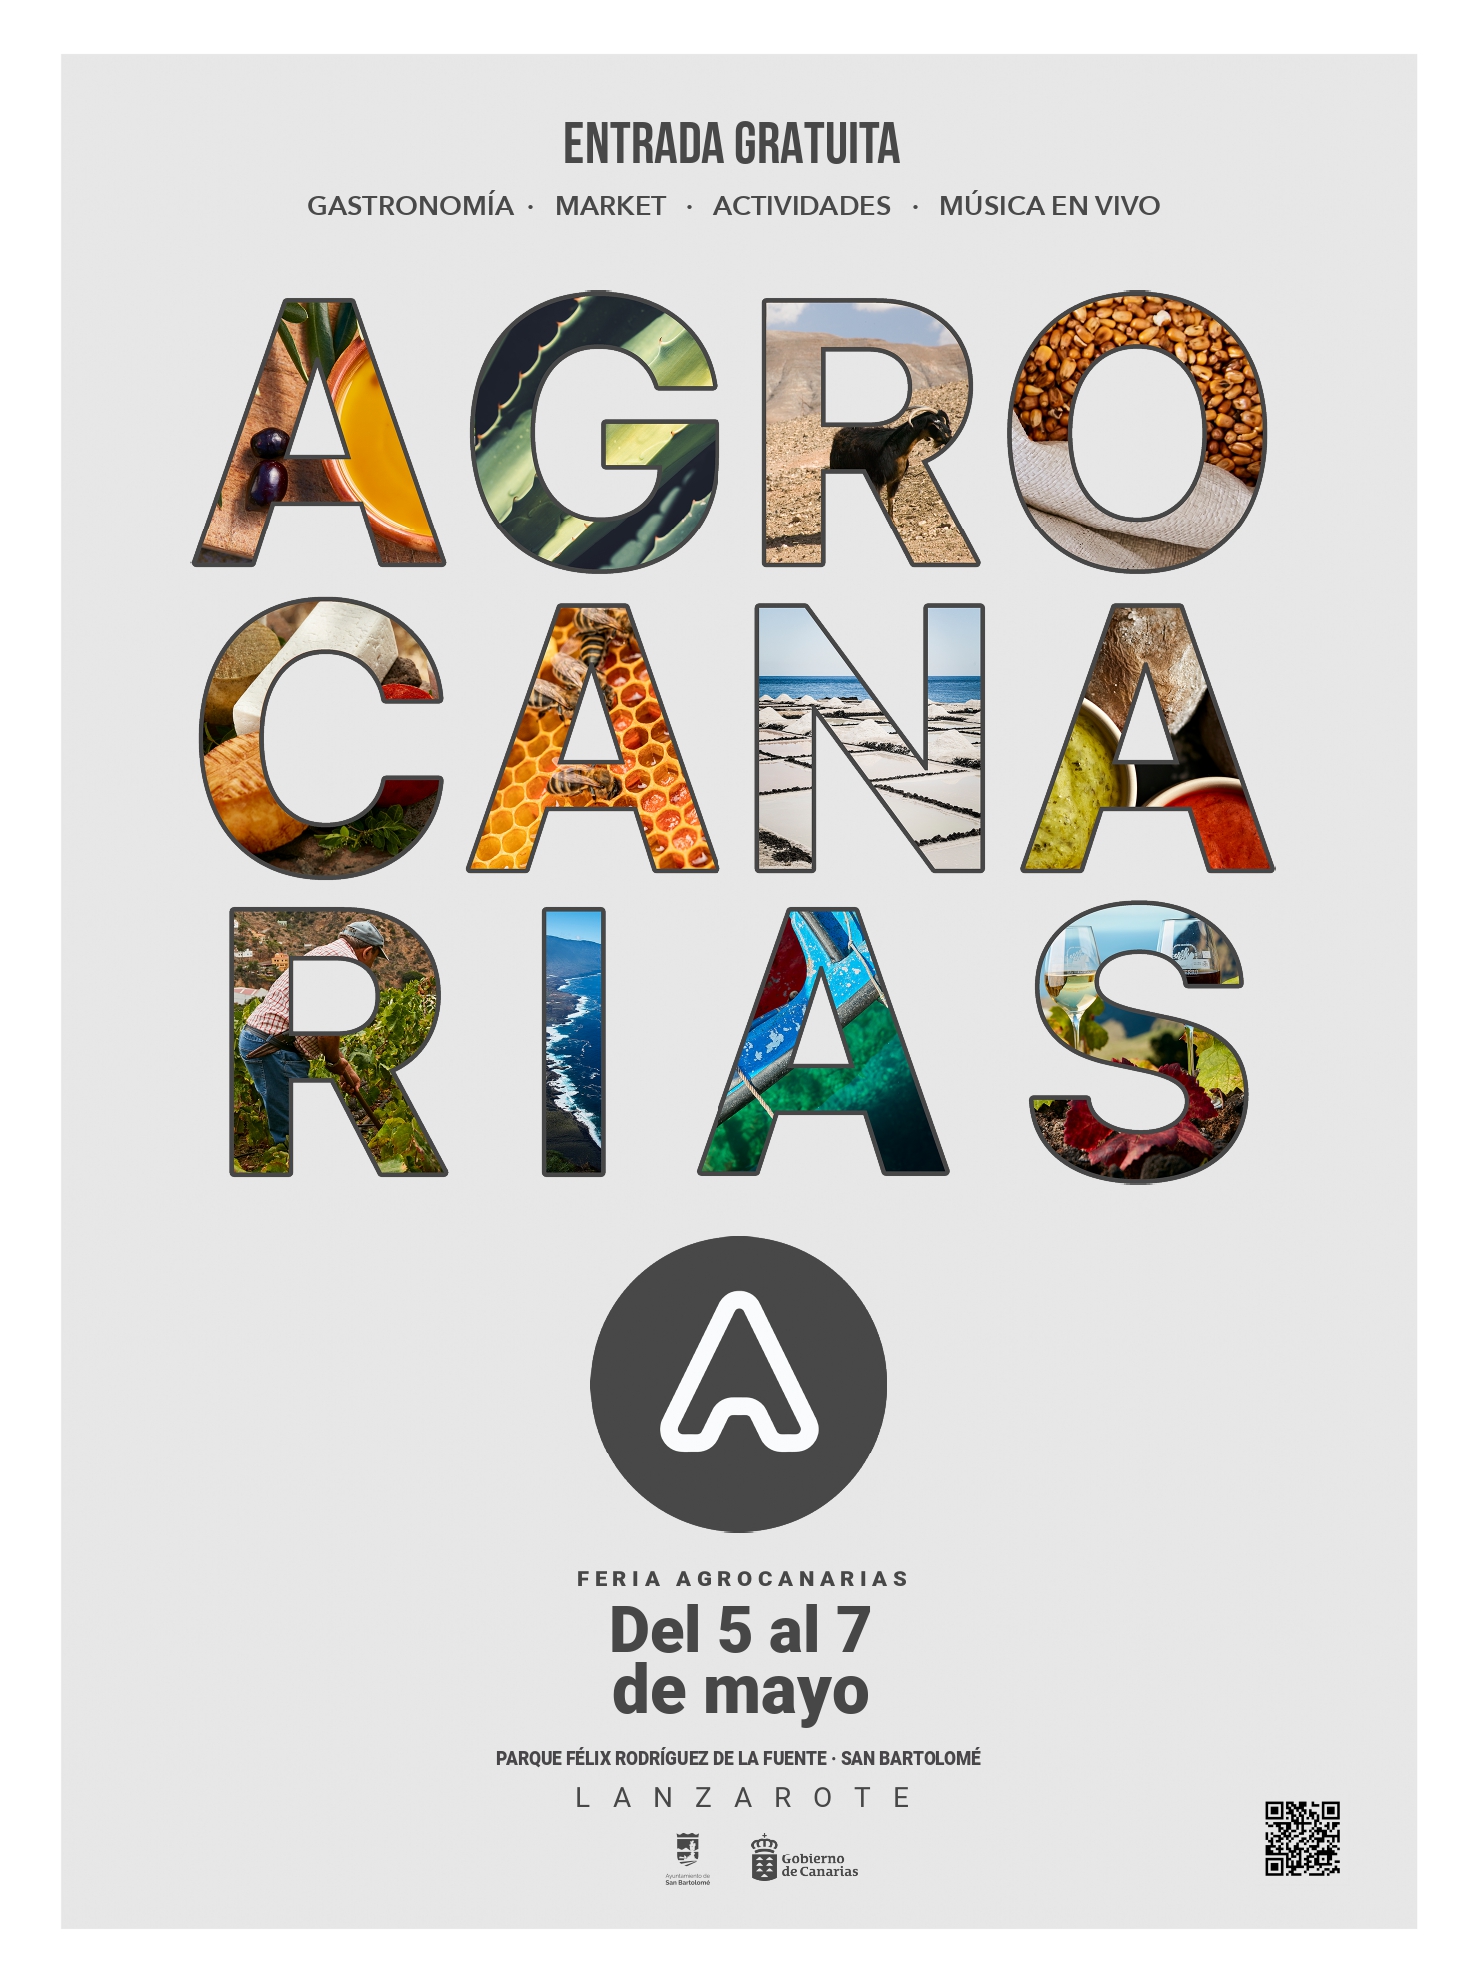 Abierto el plazo de inscripción para la sexta Feria AGROCANARIAS, que tendrá lugar en Lanzarote del 5 al 7 de mayo